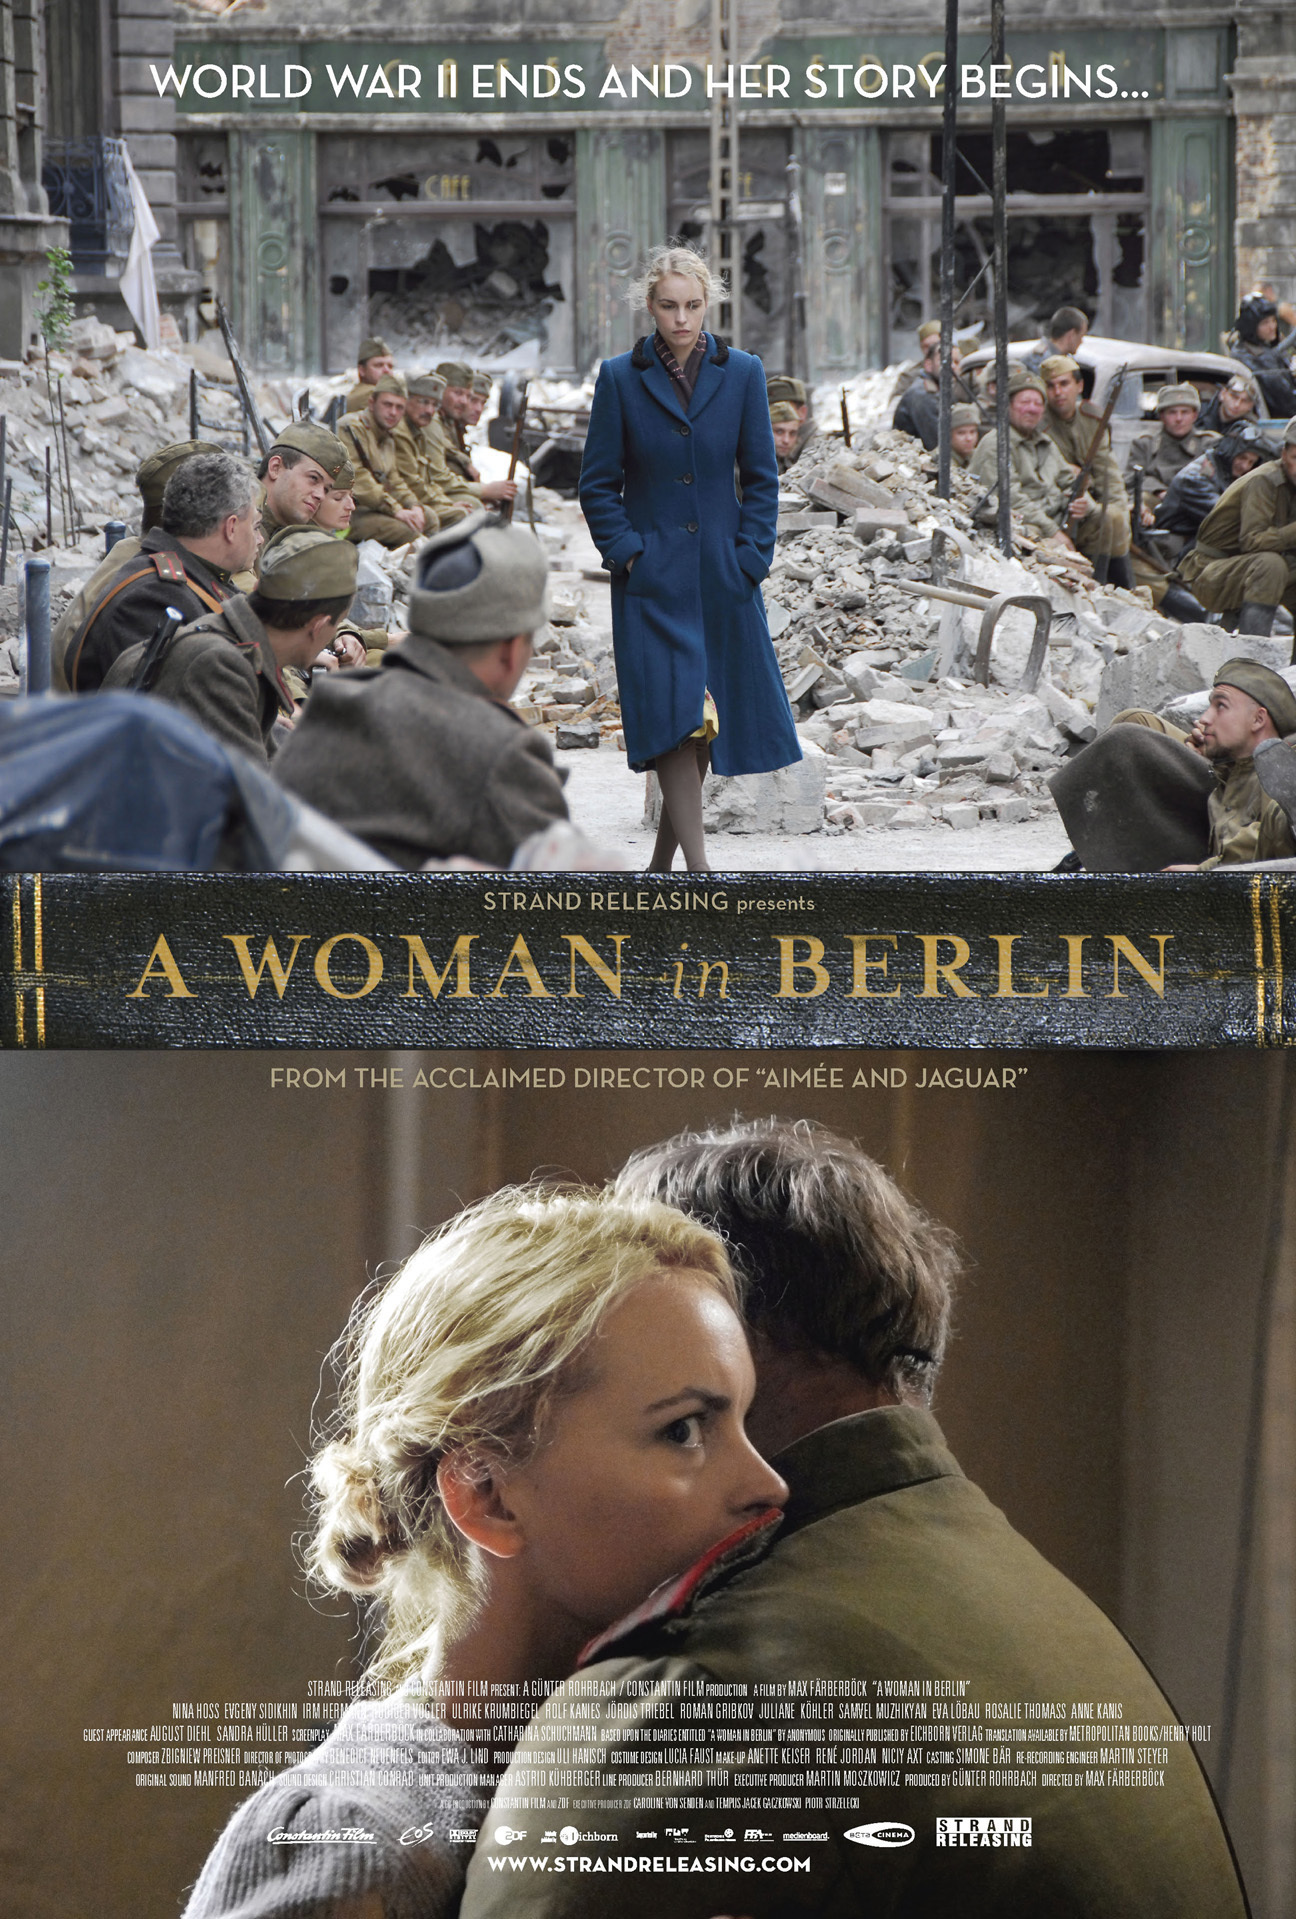 A WOMAN IN BERLIN  (Anonyma - Eine Frau in Berlin)